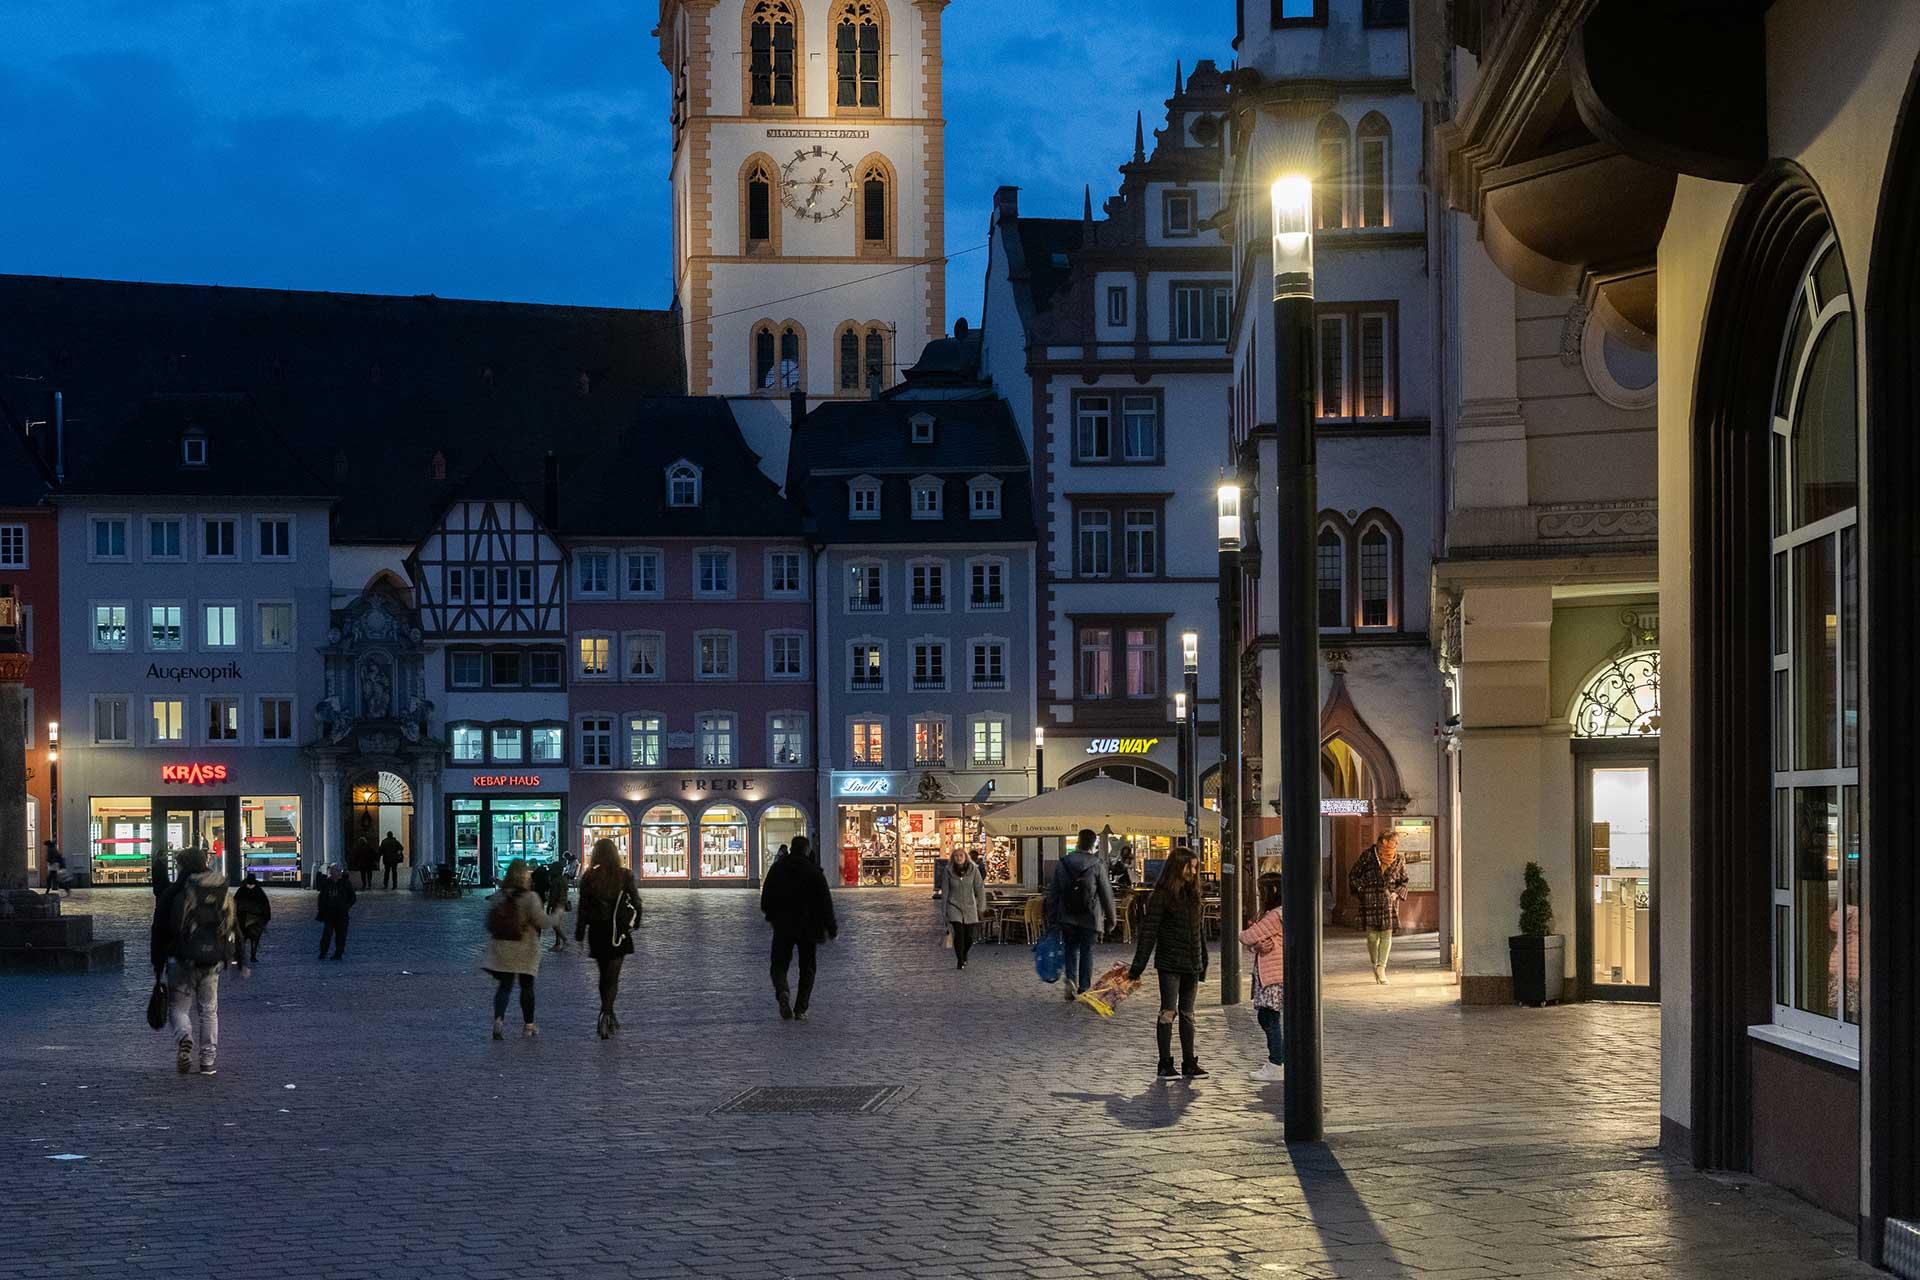 Shuffle liefert ein sanftes weißes Licht für ein sicheres und angenehmes nächtliches Erlebnis in Trier